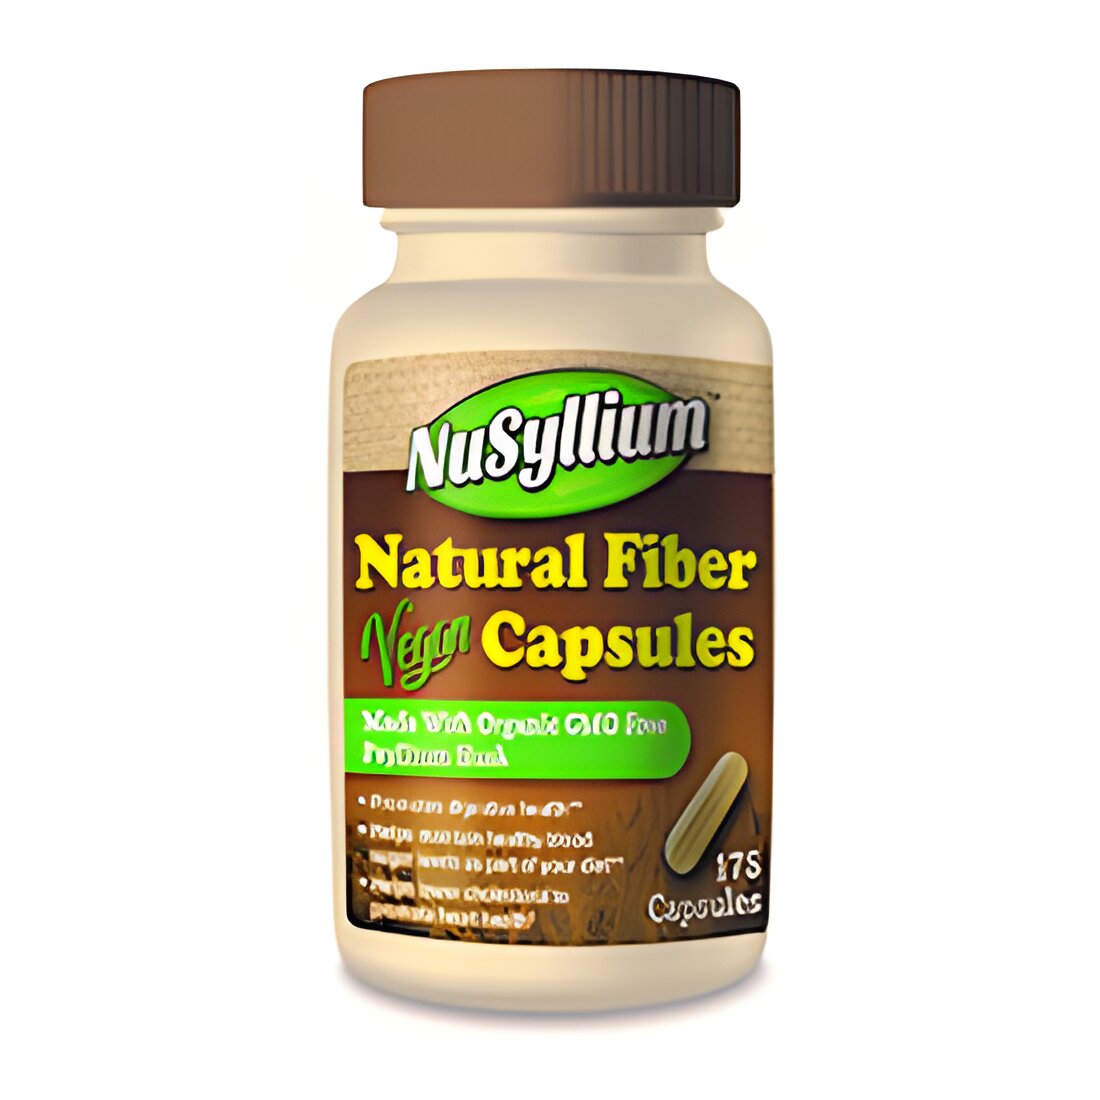 Free Nusyllium Natural Fiber Vegan Capsules